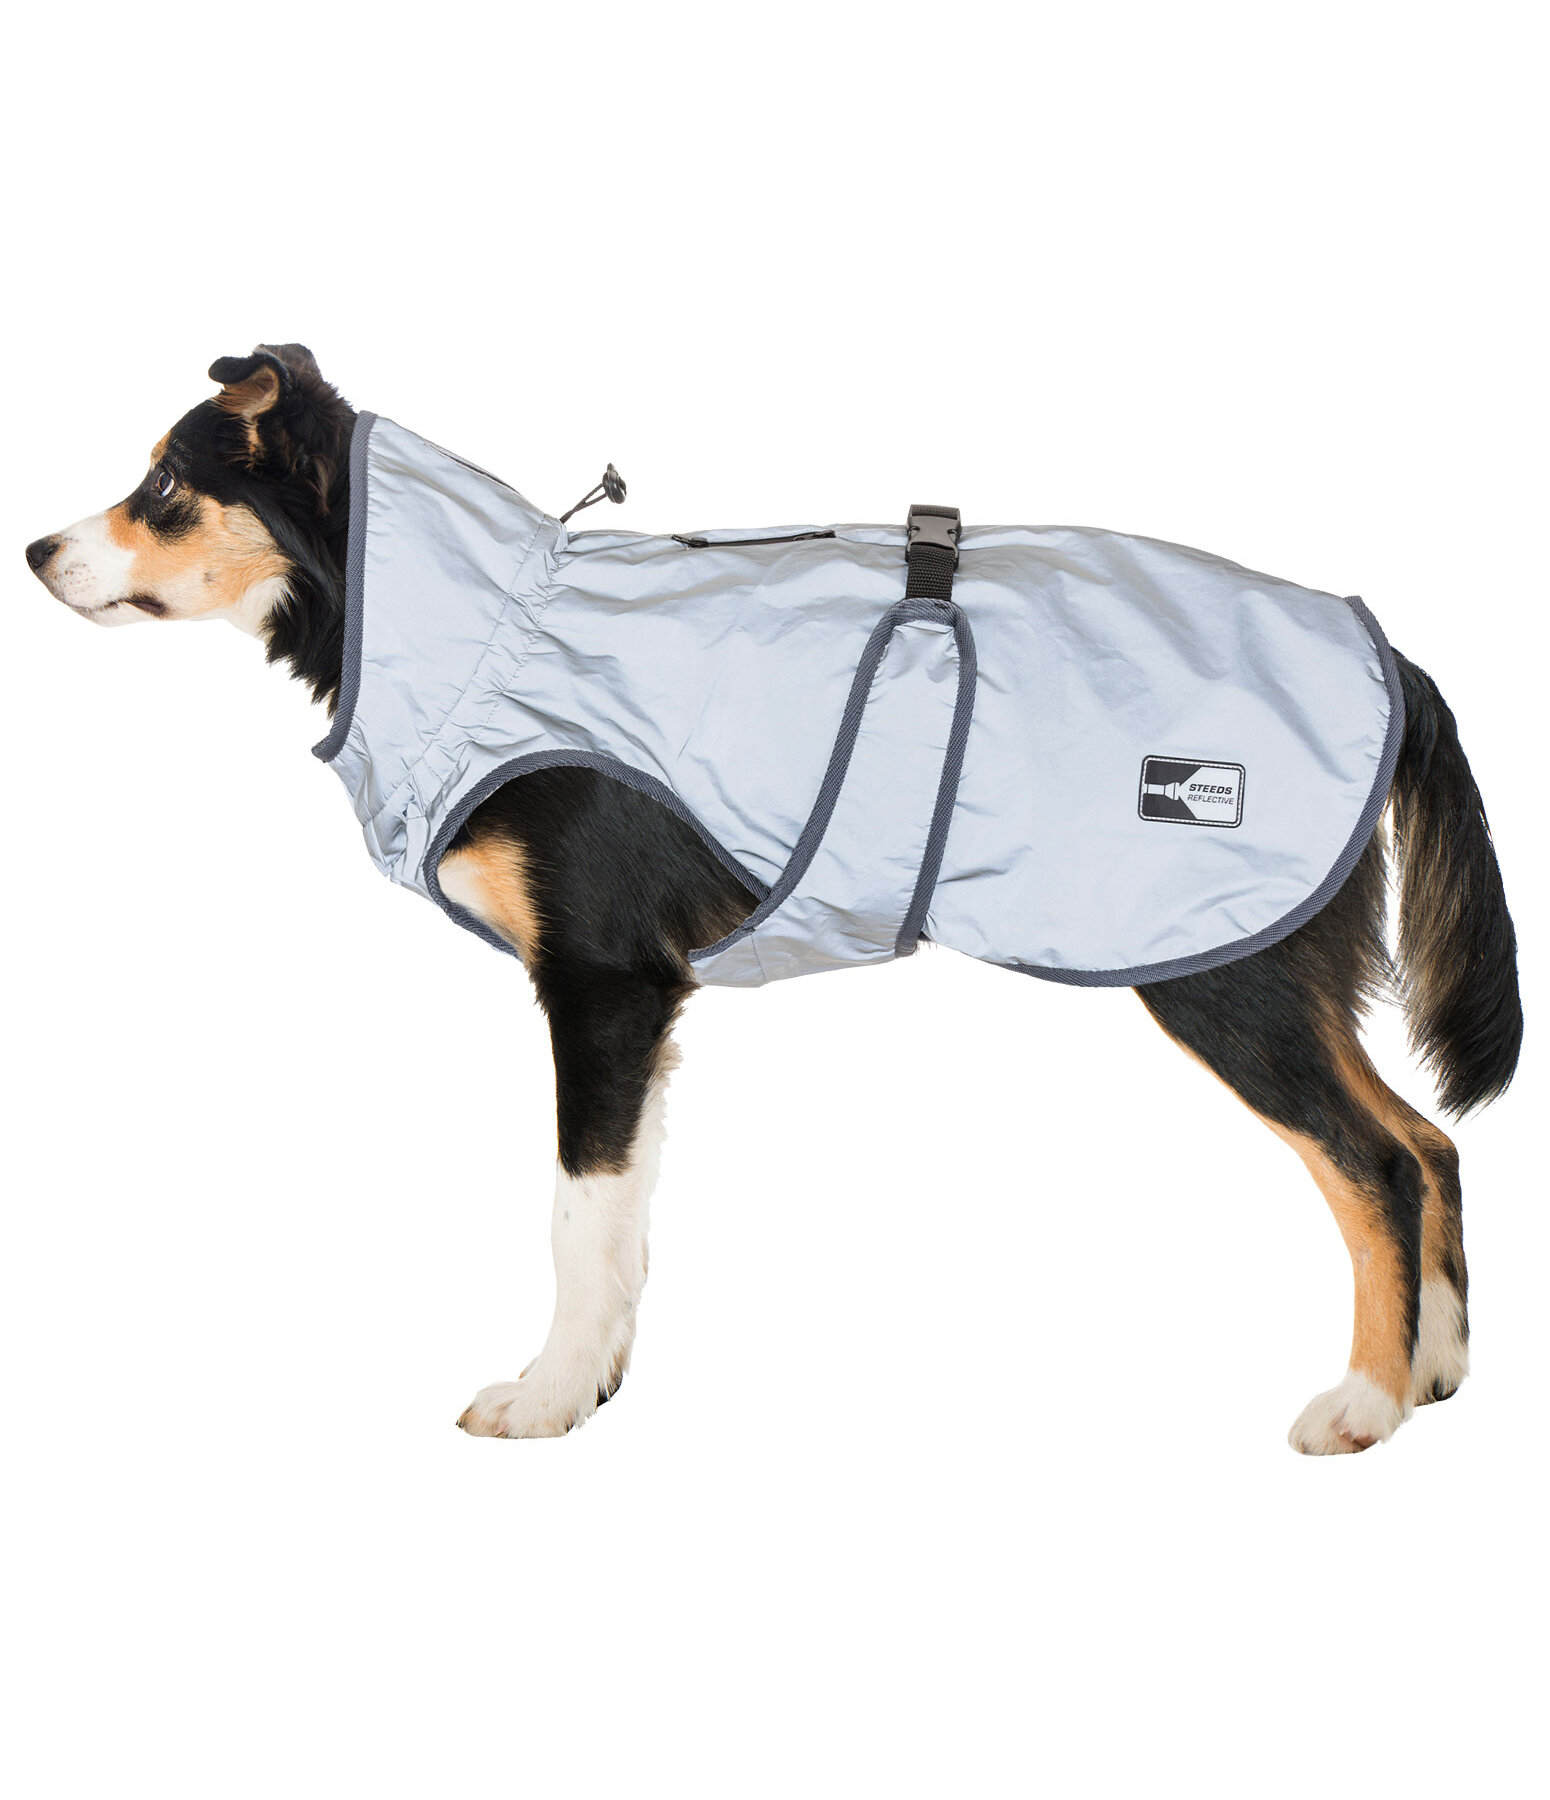 Manteau réfléchissant pour chien  Safety First, 0 g